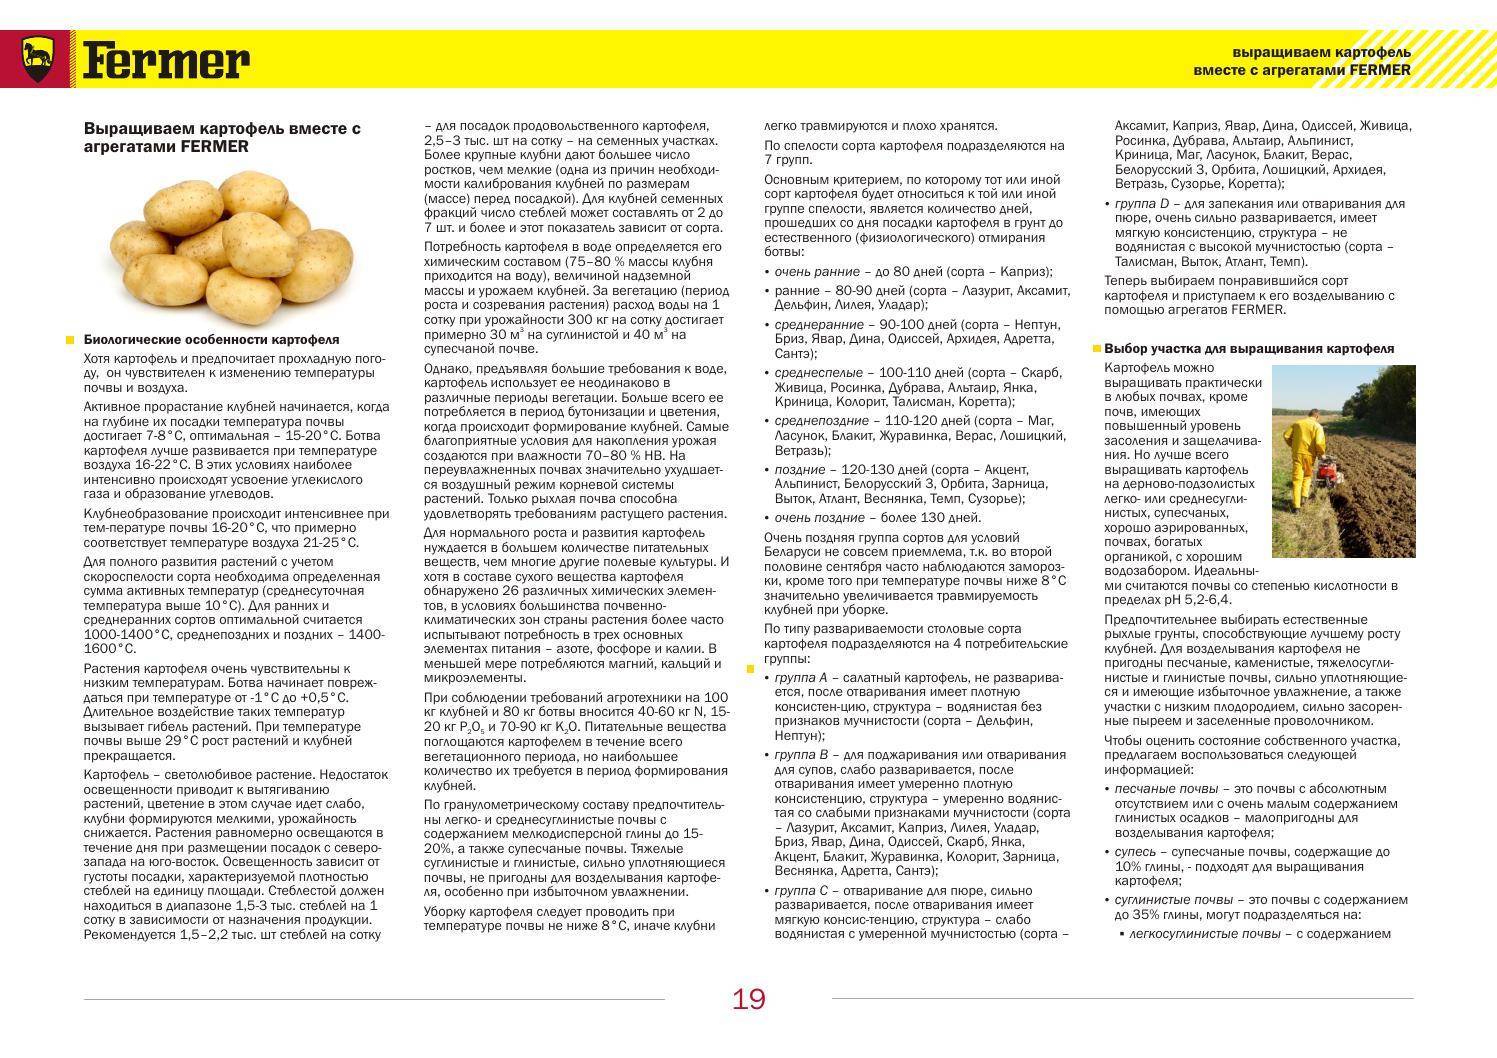 Картофель уладар: описание и характеристика сорта, отзывы дачников с фото